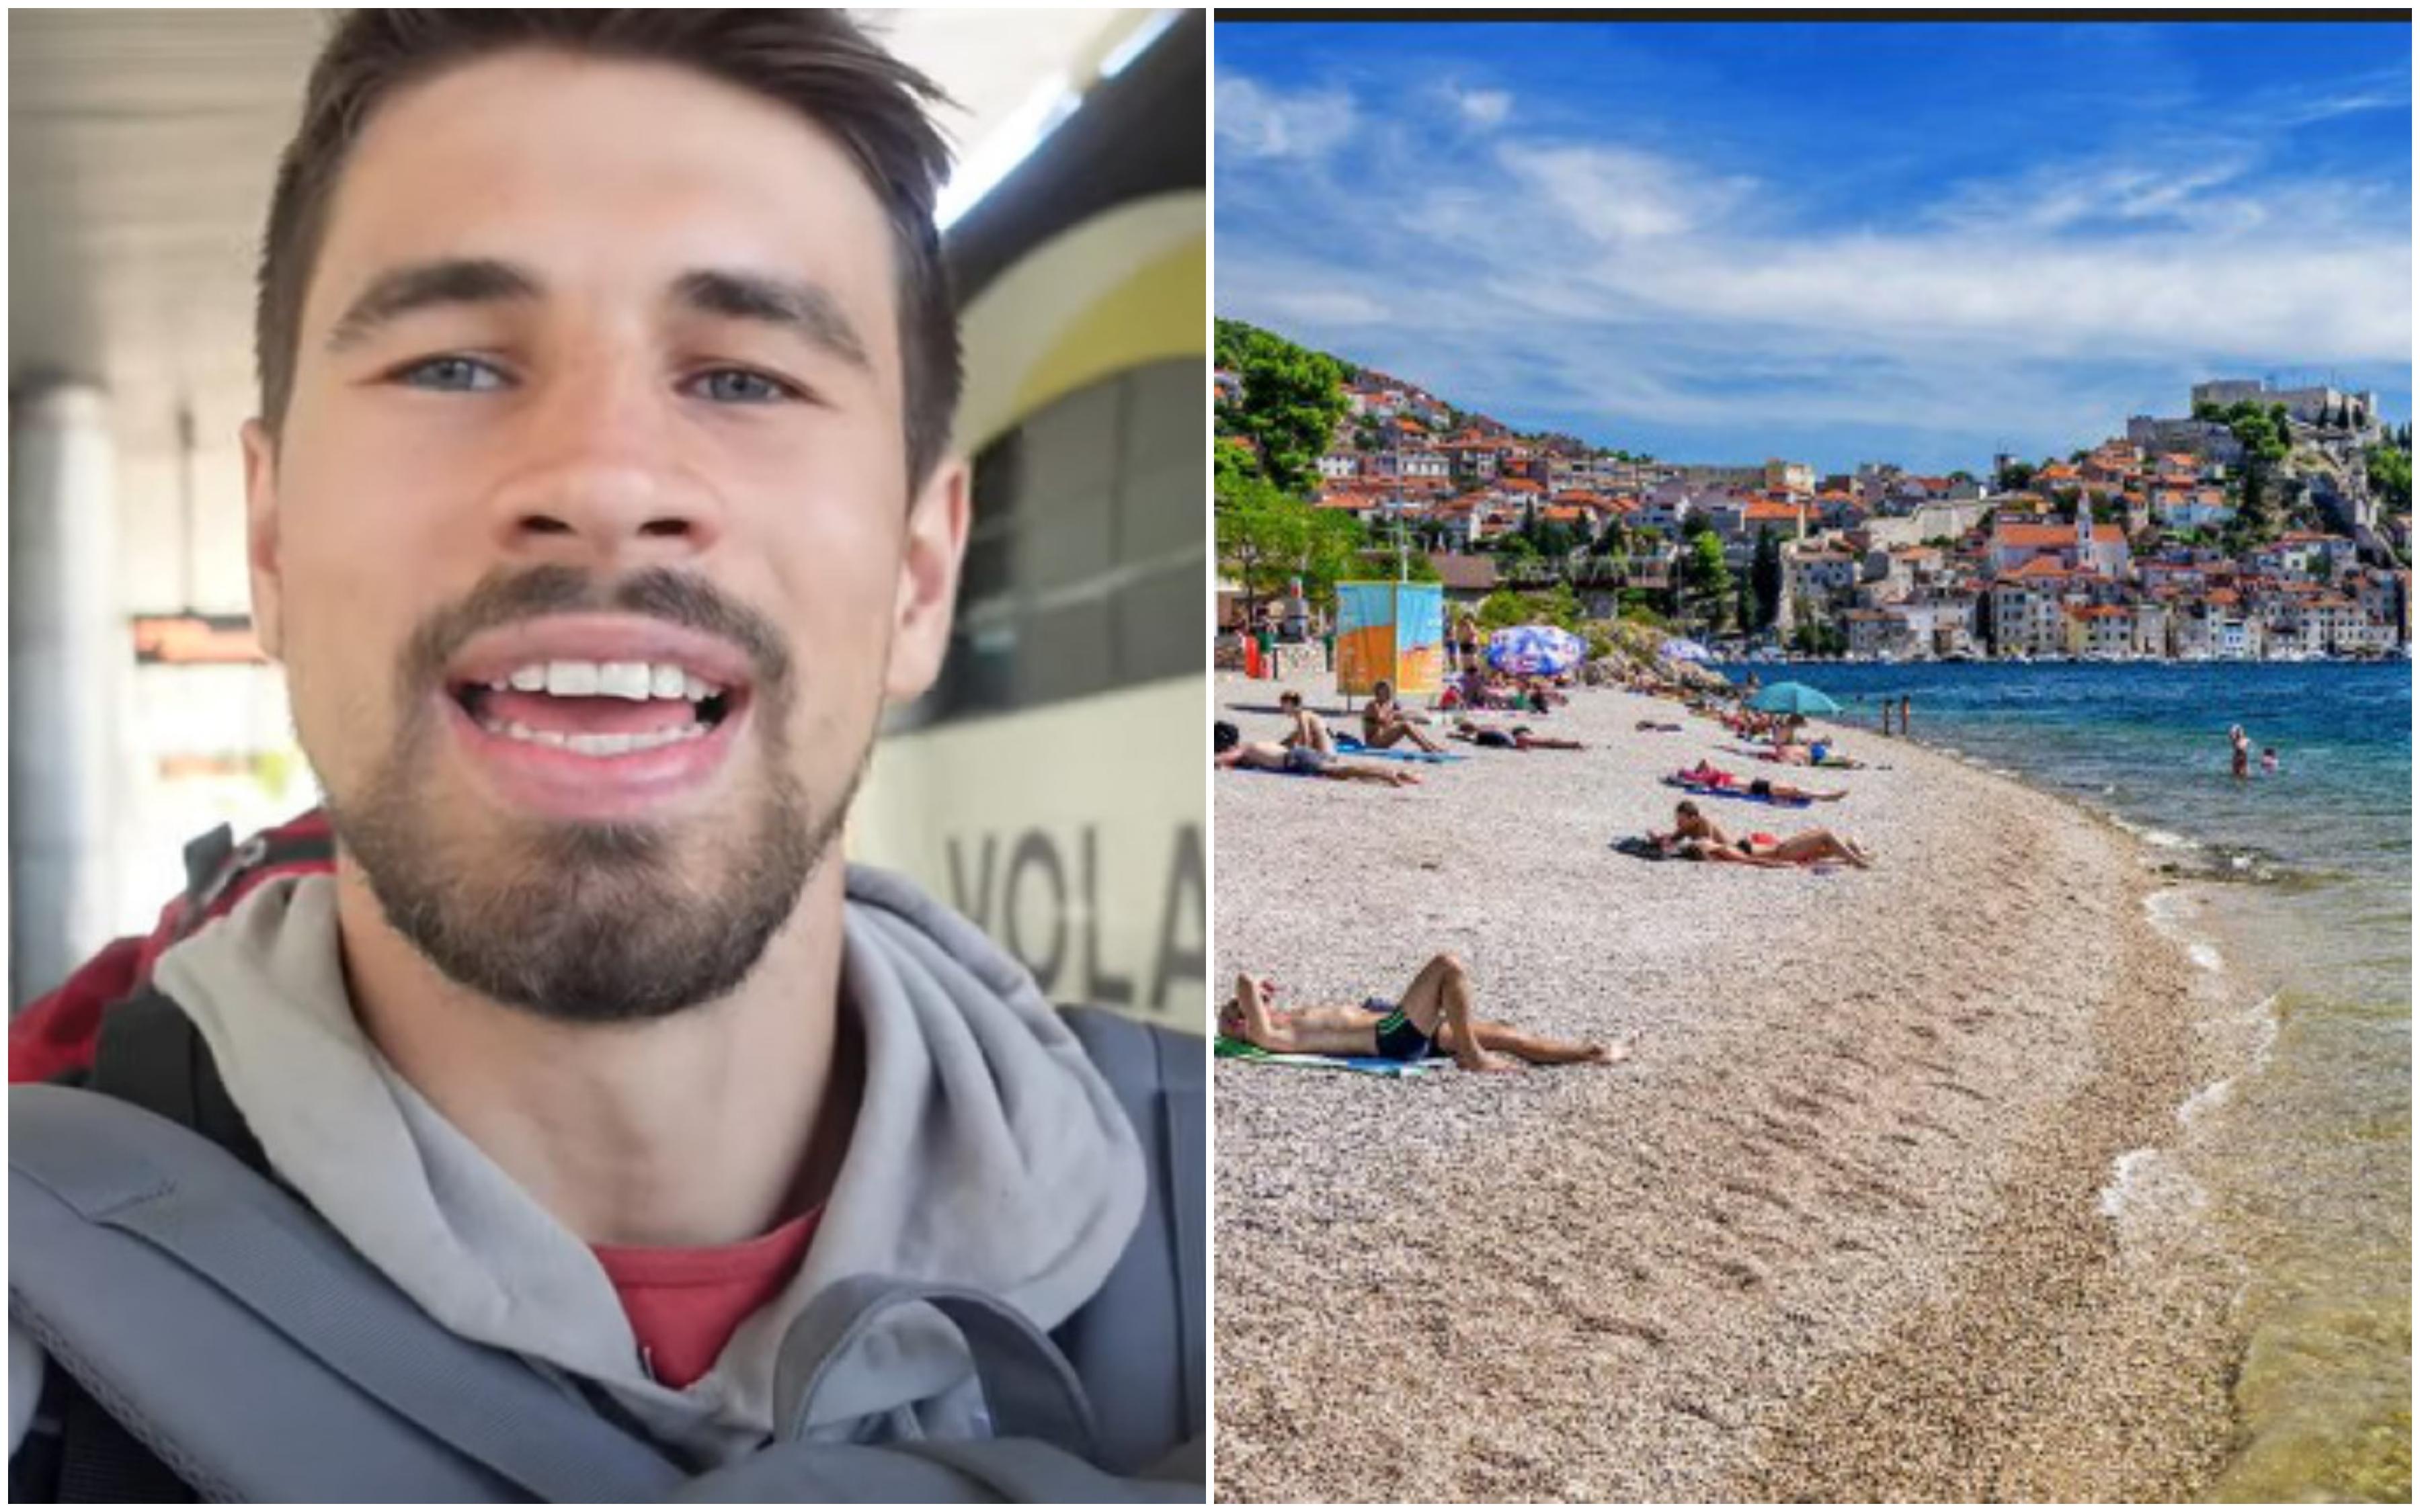 Njemački turisti tvrde da im je hostel u Dalmaciji tražio 900 eura za sobu